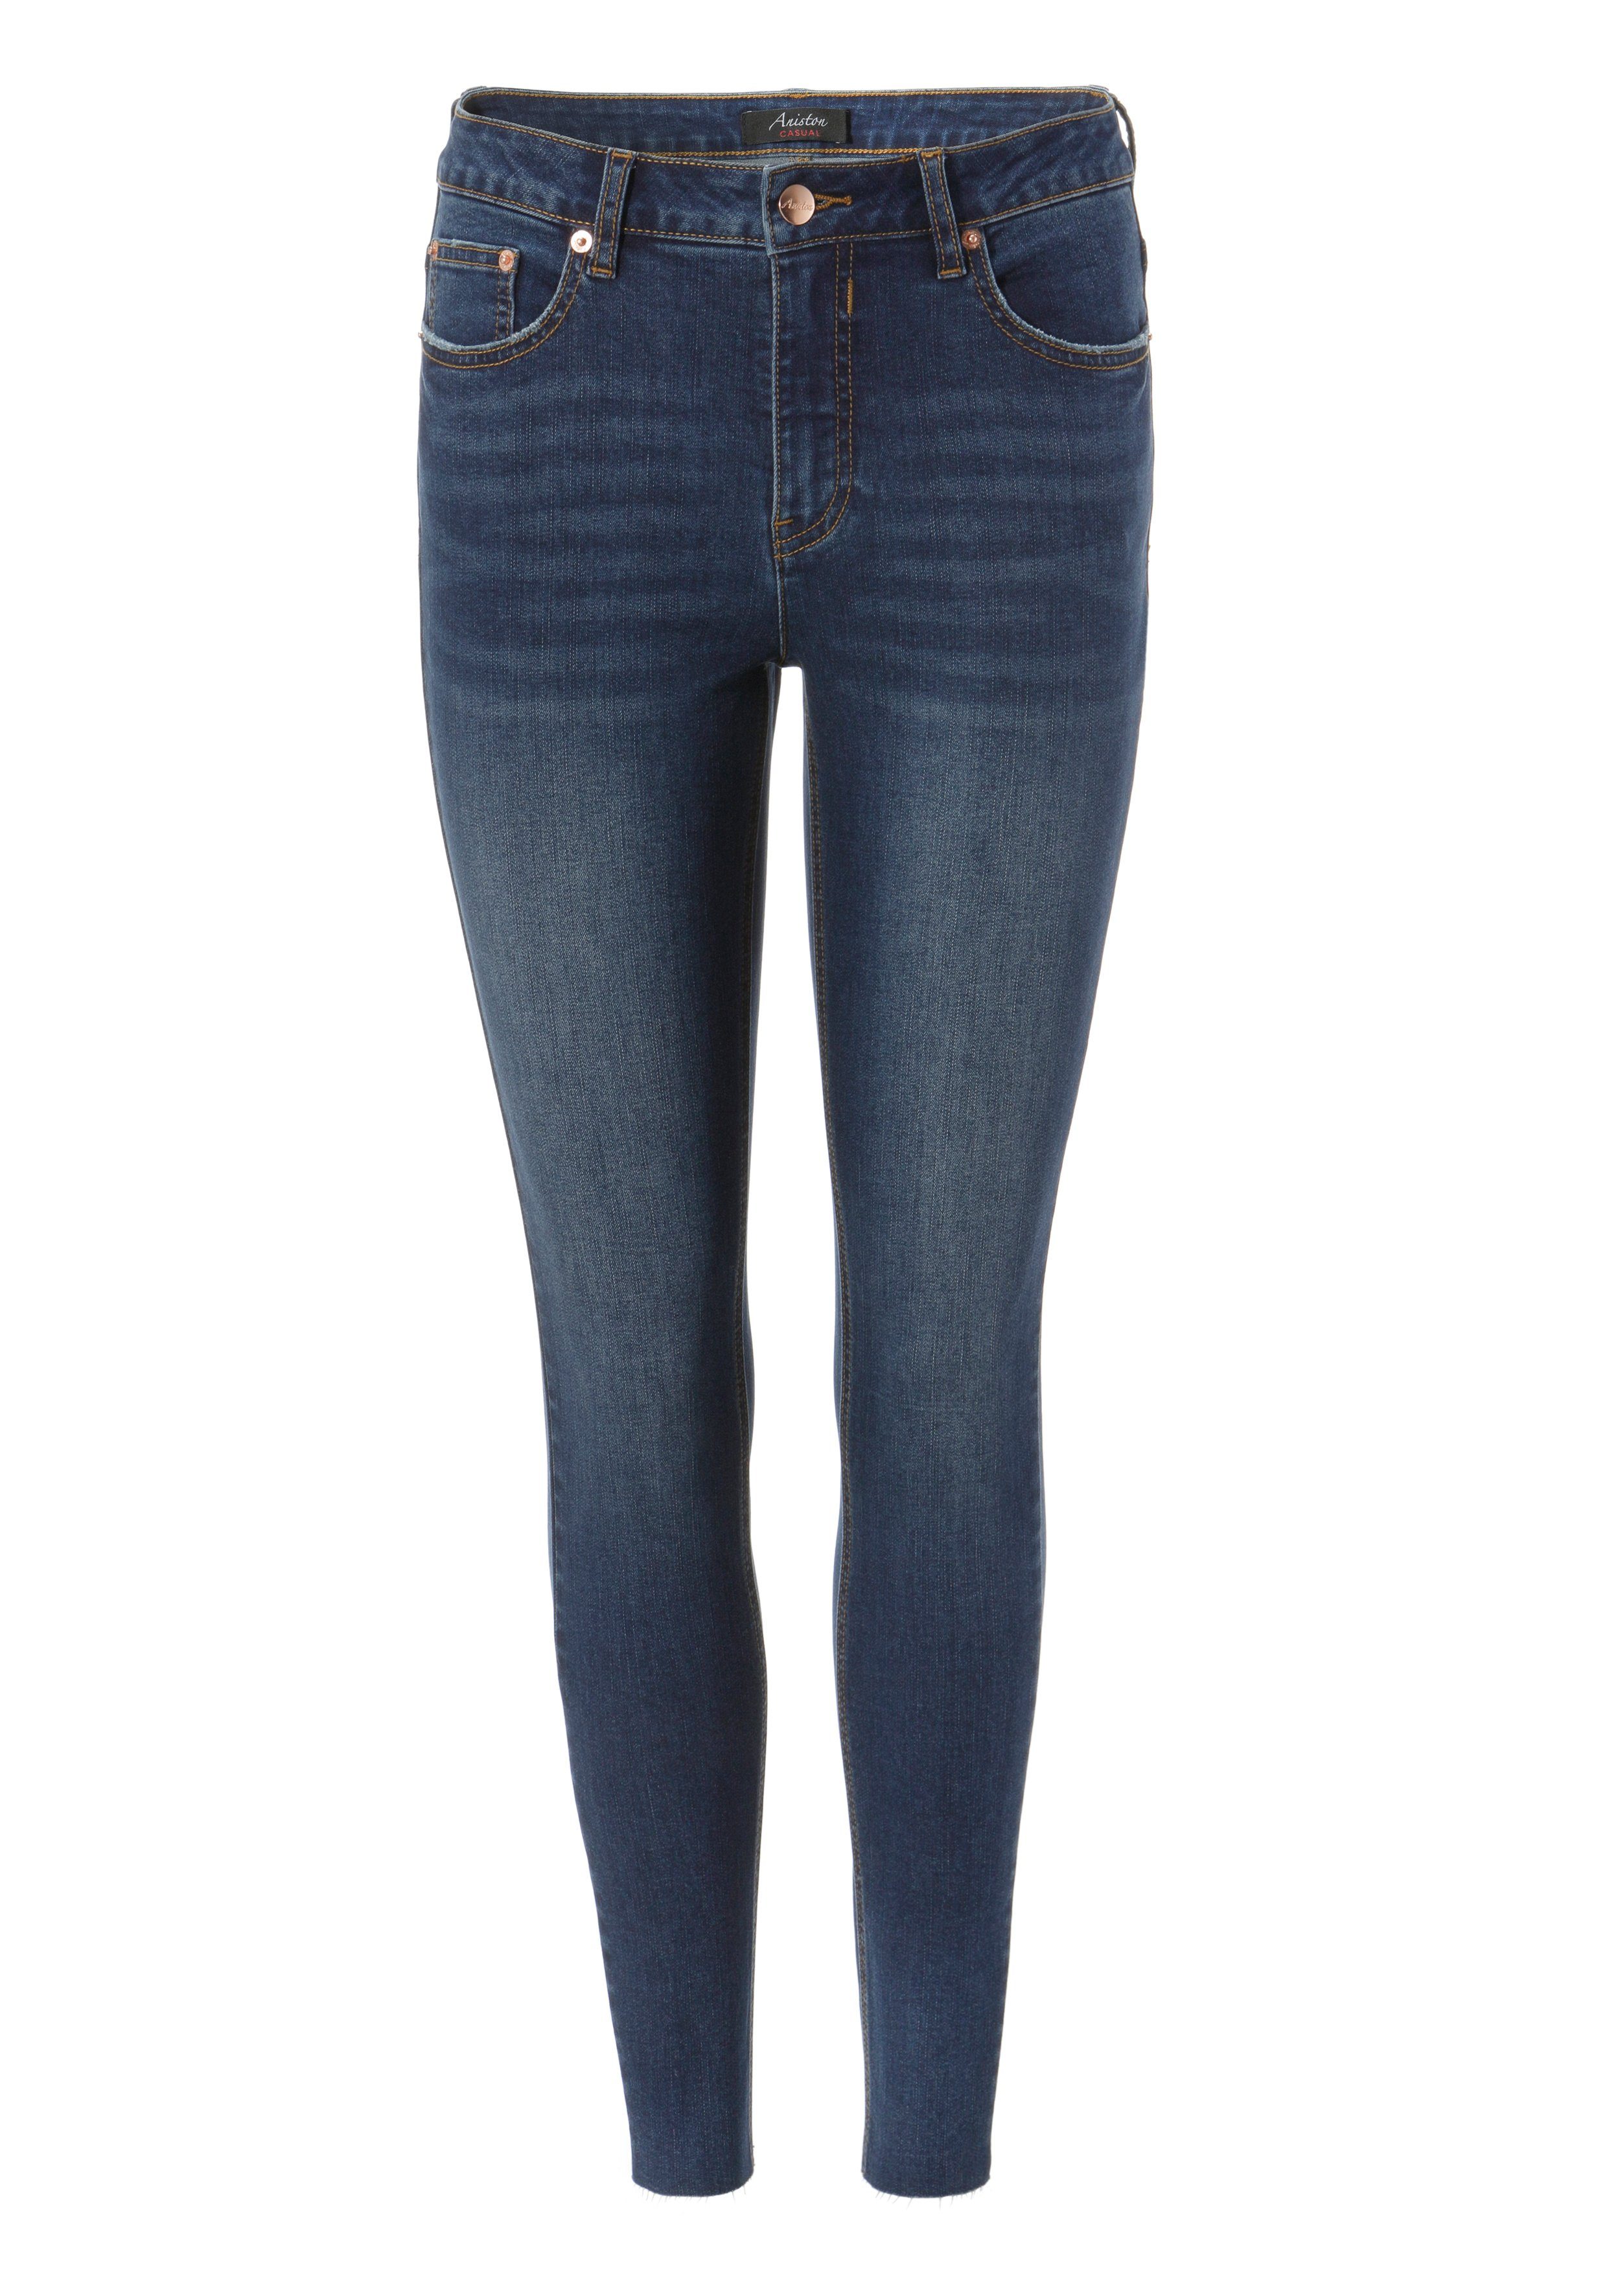 Aniston CASUAL Skinny-fit-Jeans - regular waist darkblue ausgefransten mit Beinabschluss